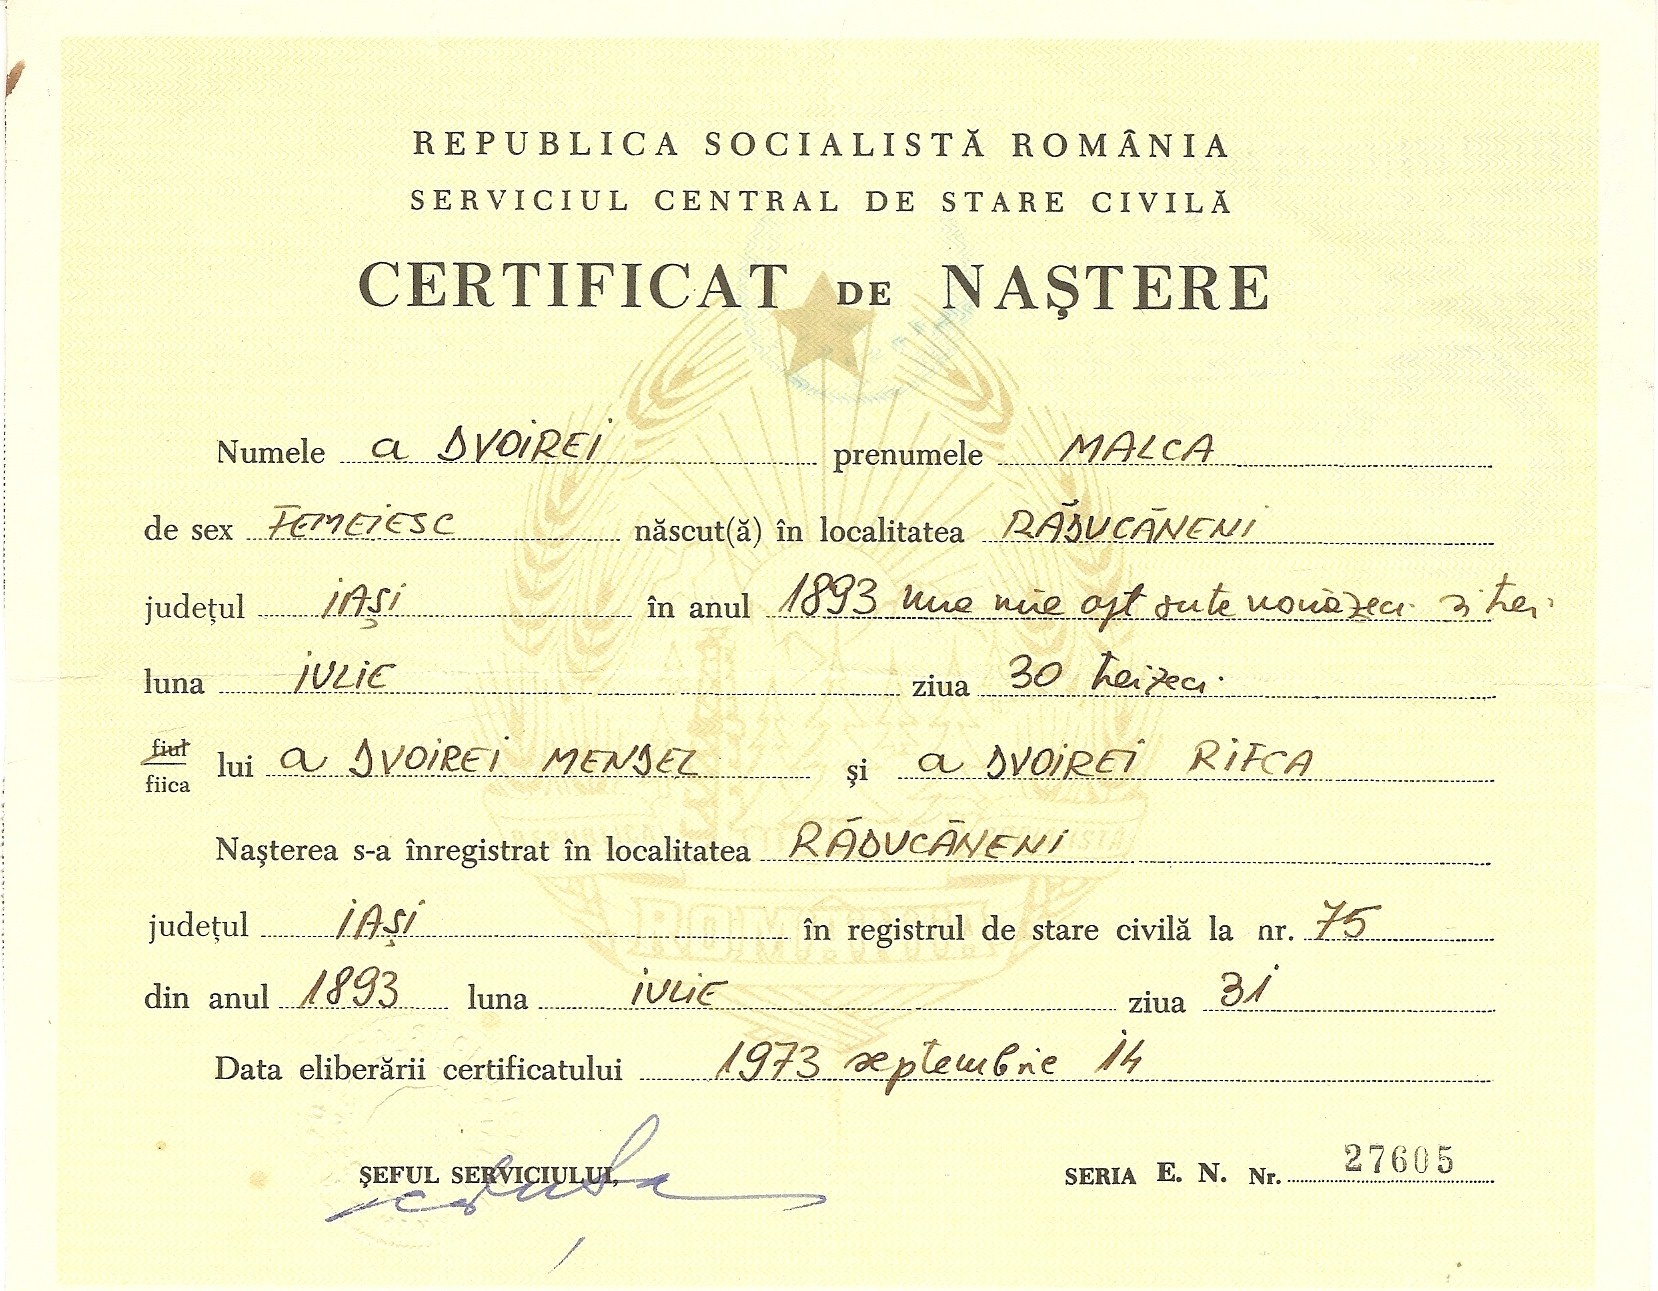 Malca Solomon birth certificate